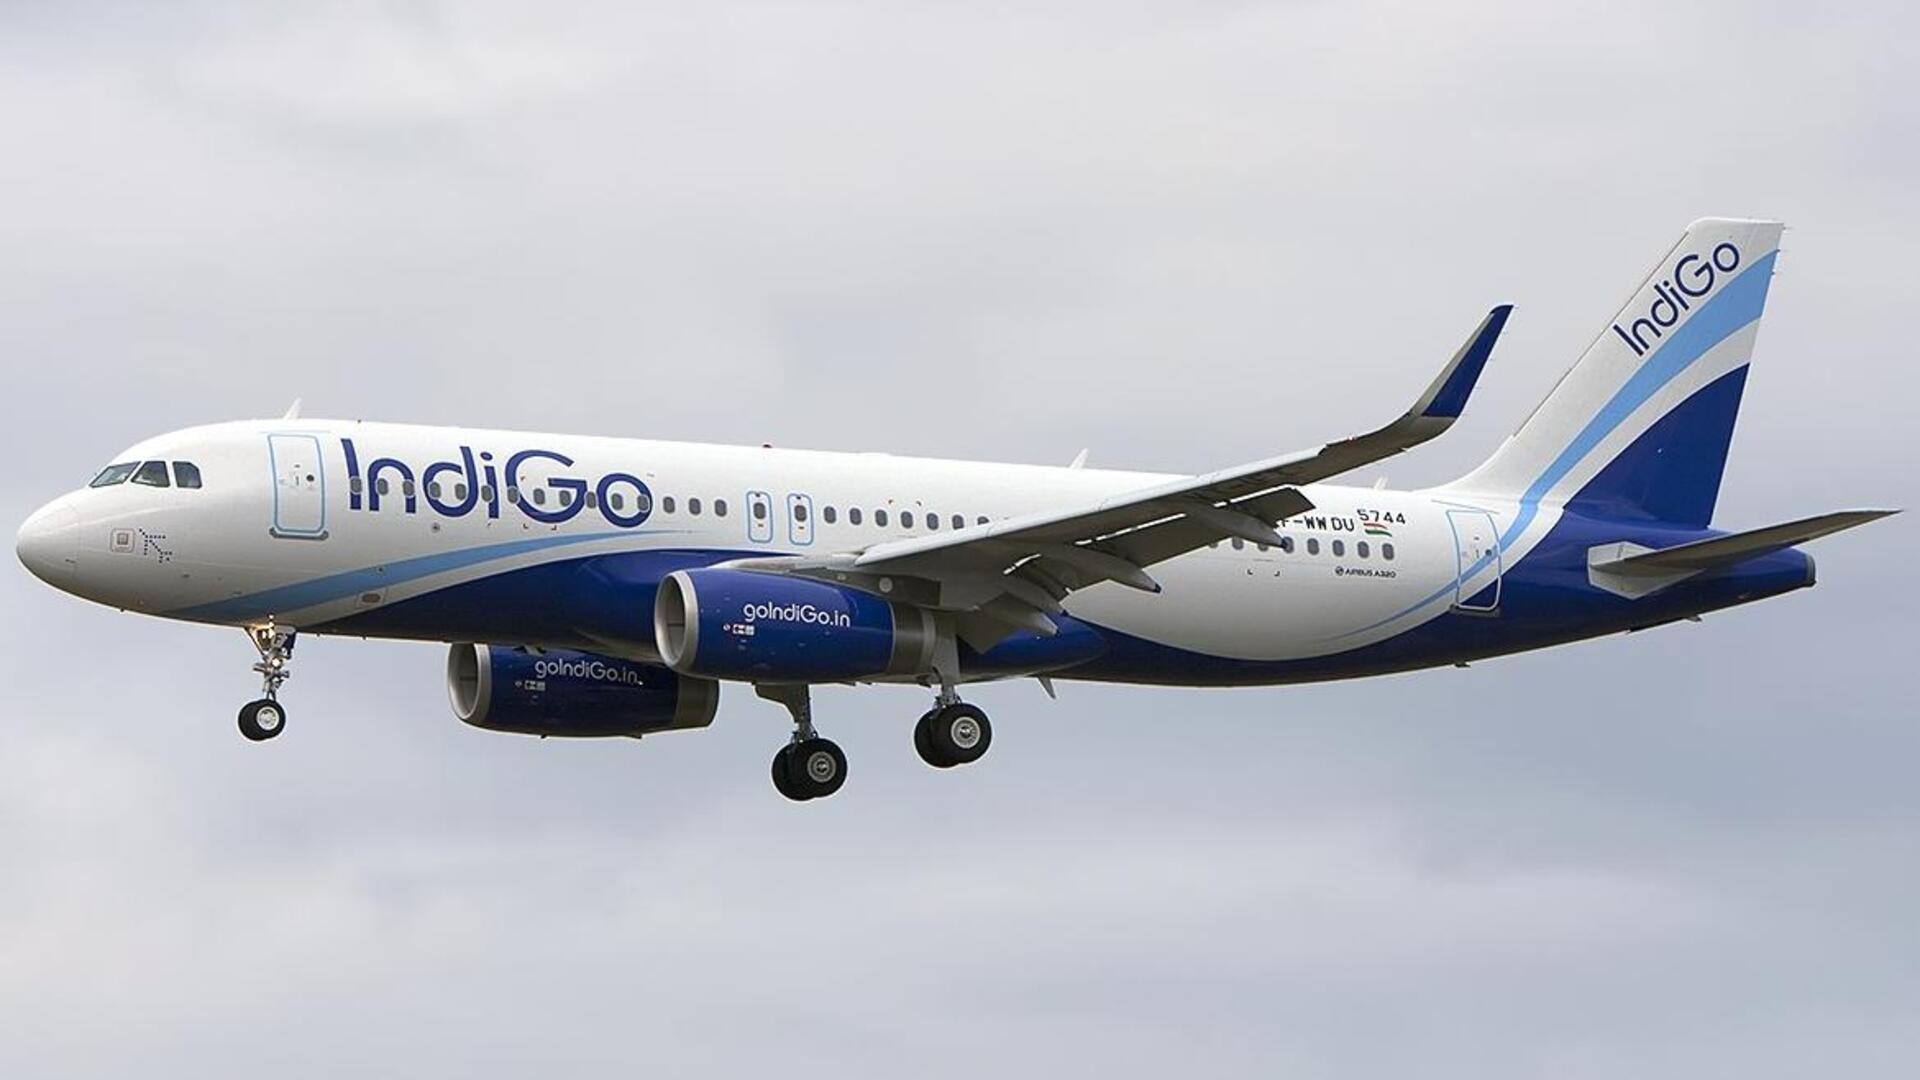 इंडिगो की फ्लाइट में नशे में धुत यात्री ने की एयर होस्टेस से छेड़छाड़, गिरफ्तार